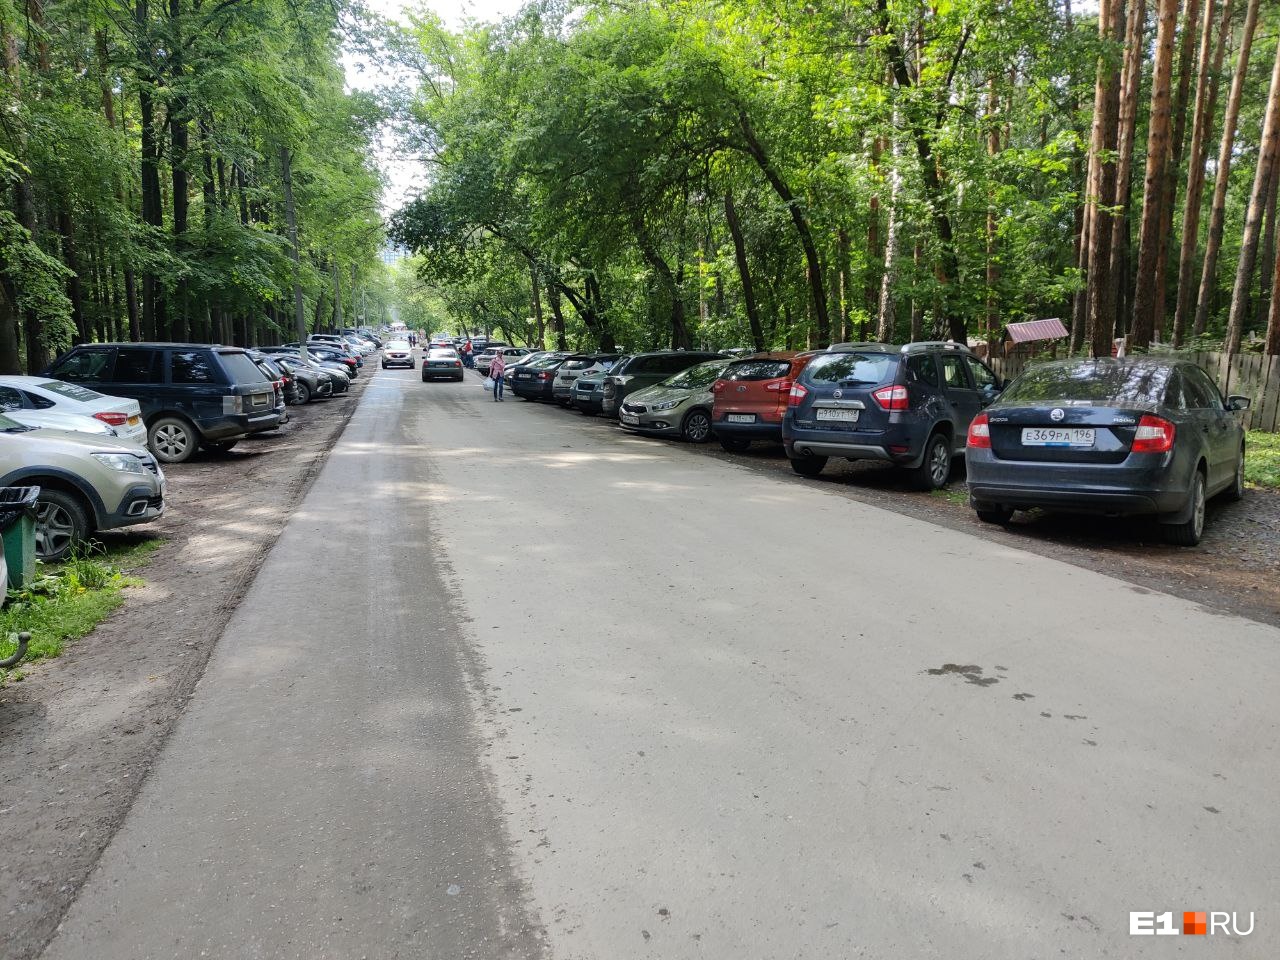 «Устроили там паркинг»: горожане пожаловались на засилье машин в парке Маяковского